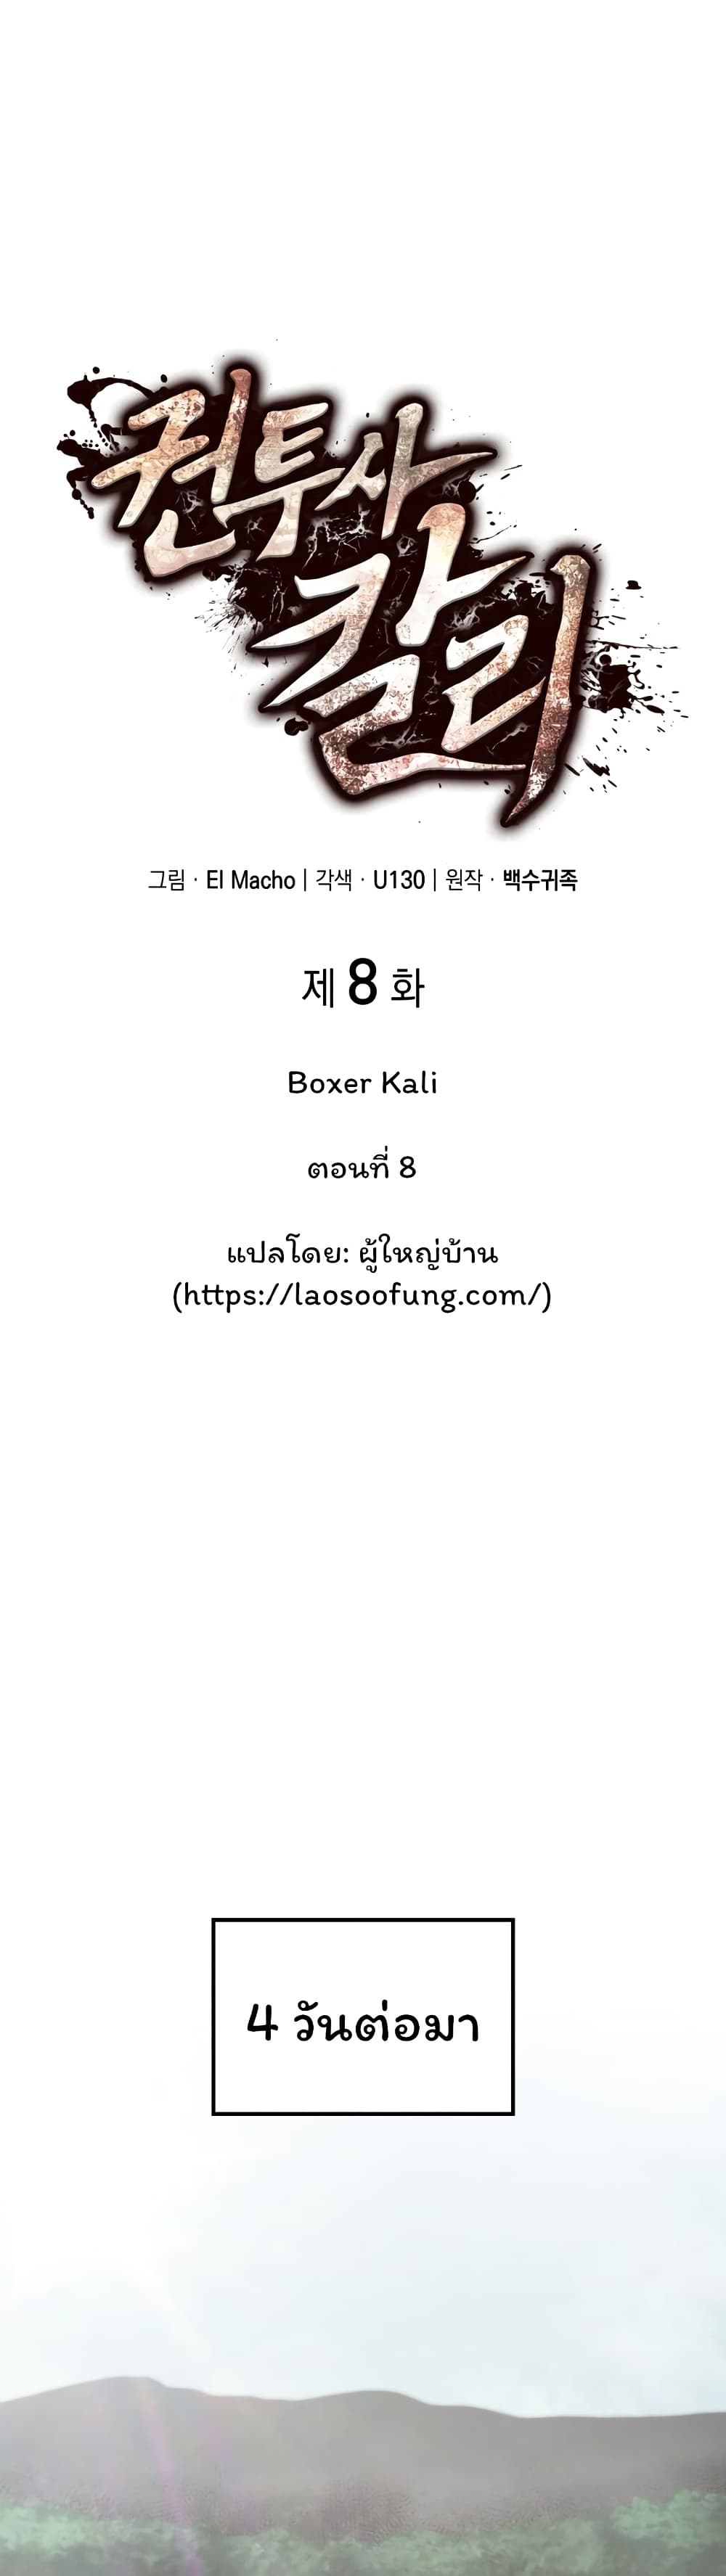 Boxer Kali 8-8